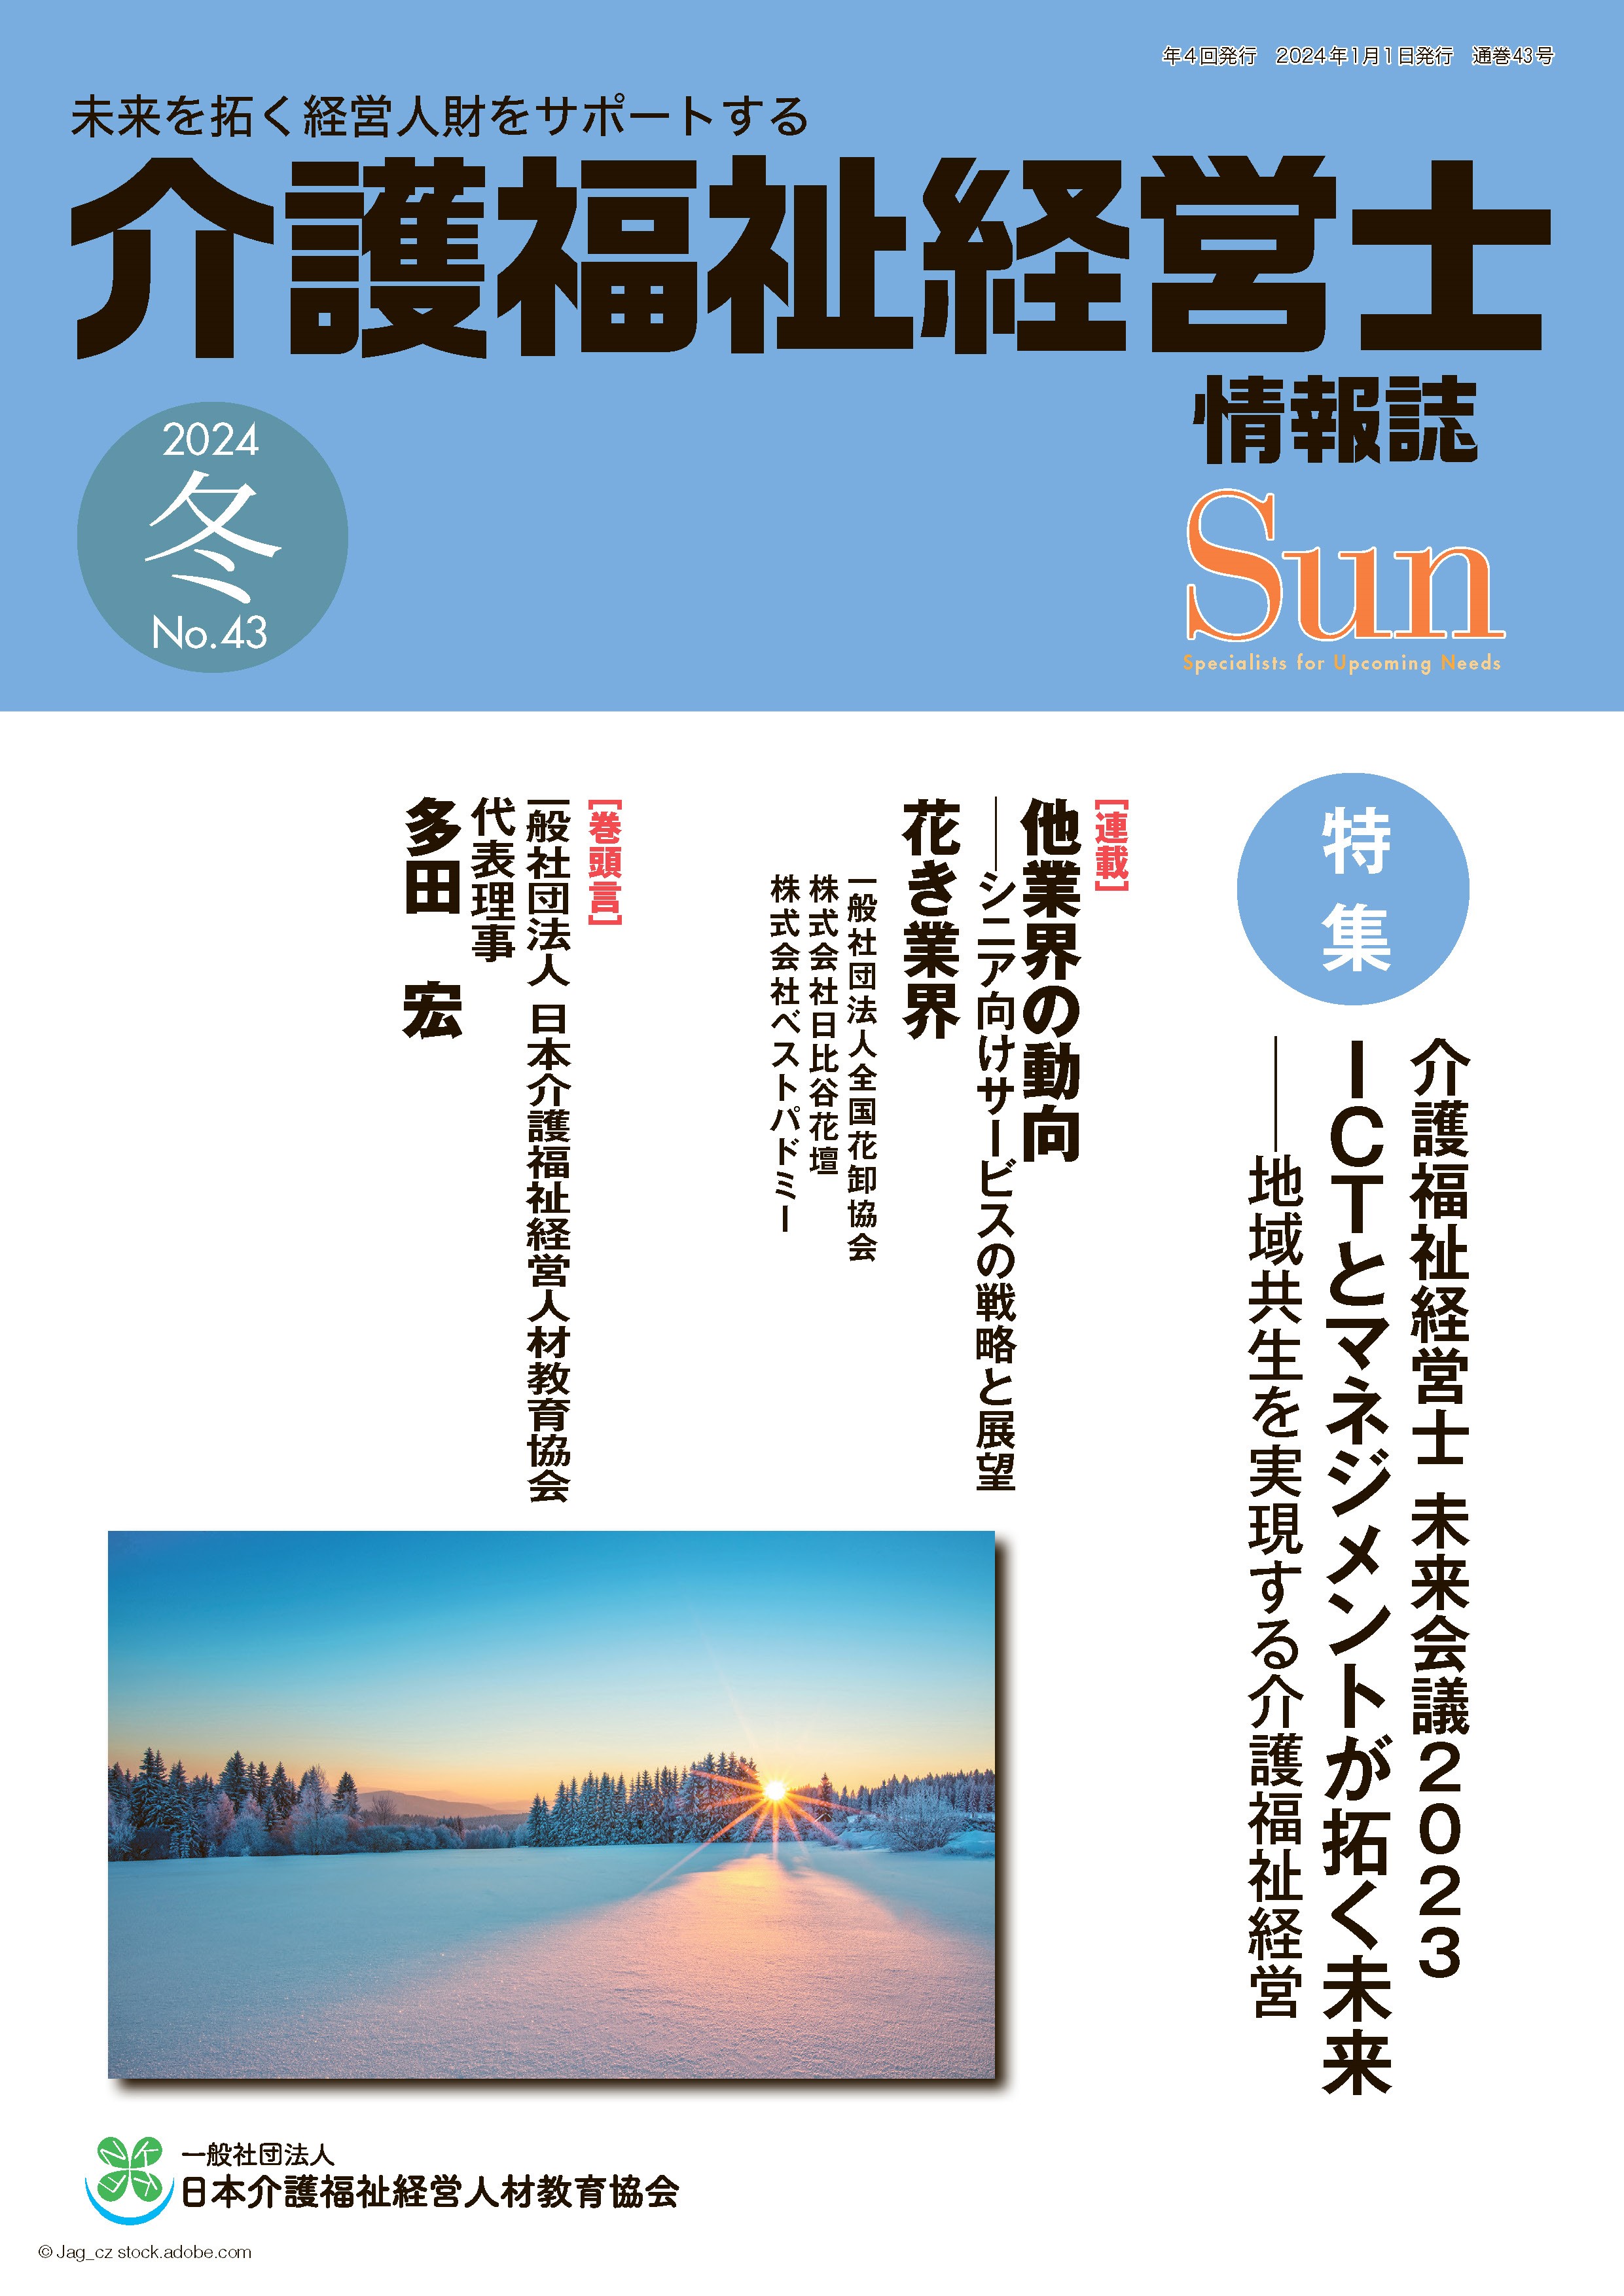 「介護福祉経営士」情報誌 Sun 第43号